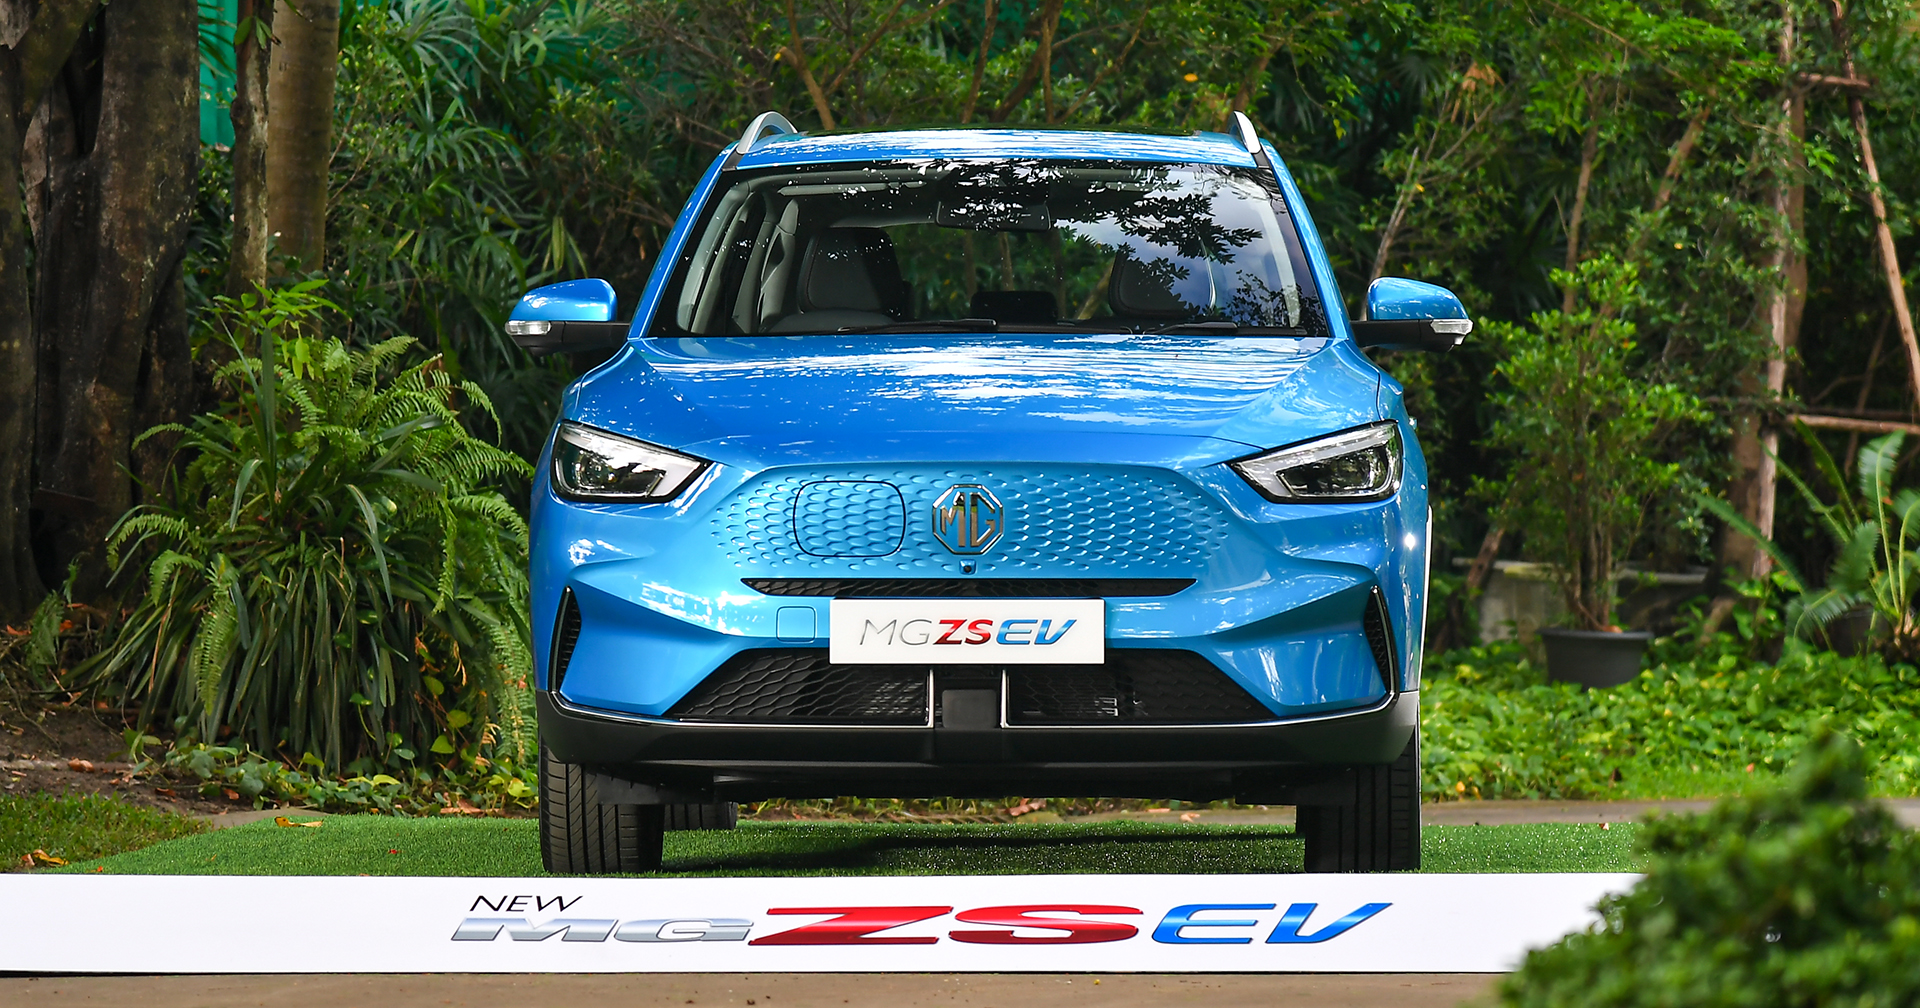 New MG ZS EV รถยนต์พลังงานไฟฟ้า 100% ราคาเปิดตัวที่งานมอเตอร์โชว์